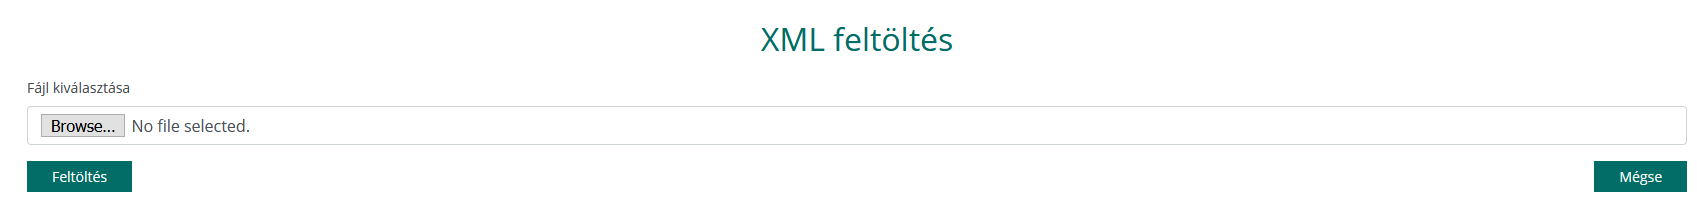 xml feltoltes